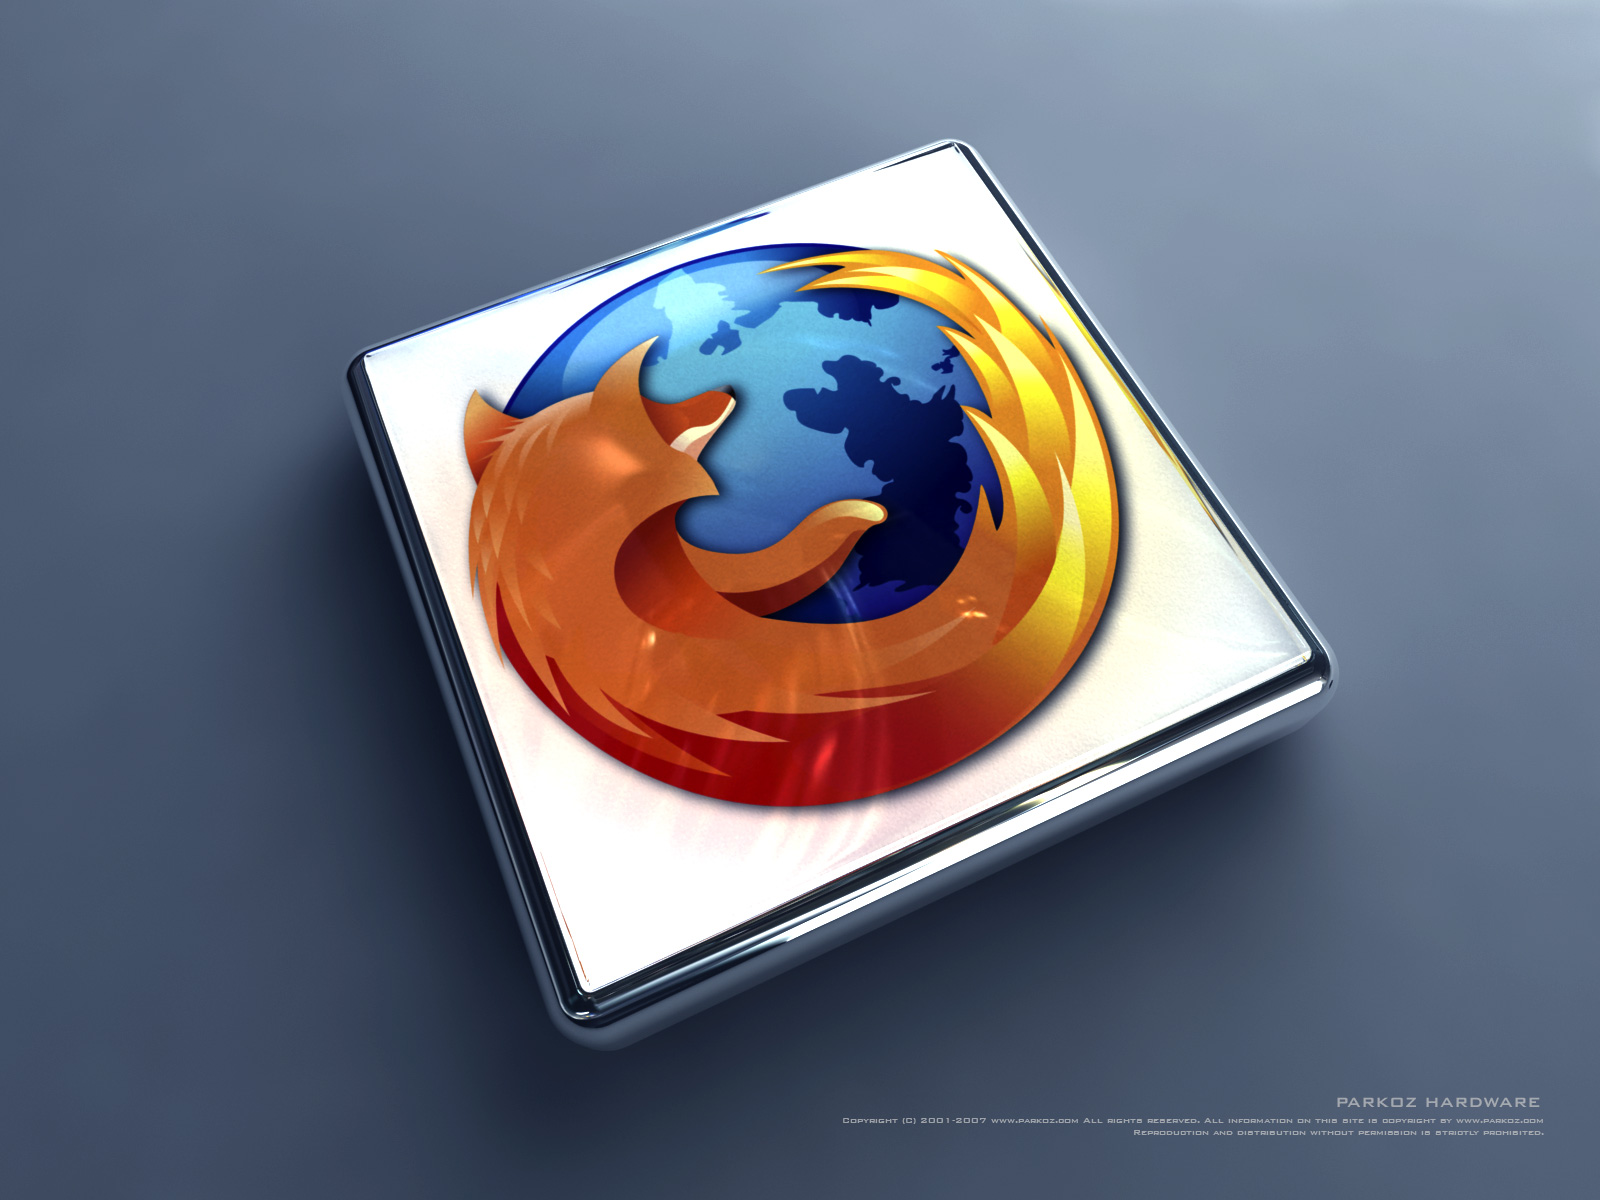 Descarga gratuita de fondo de pantalla para móvil de Tecnología, Firefox.